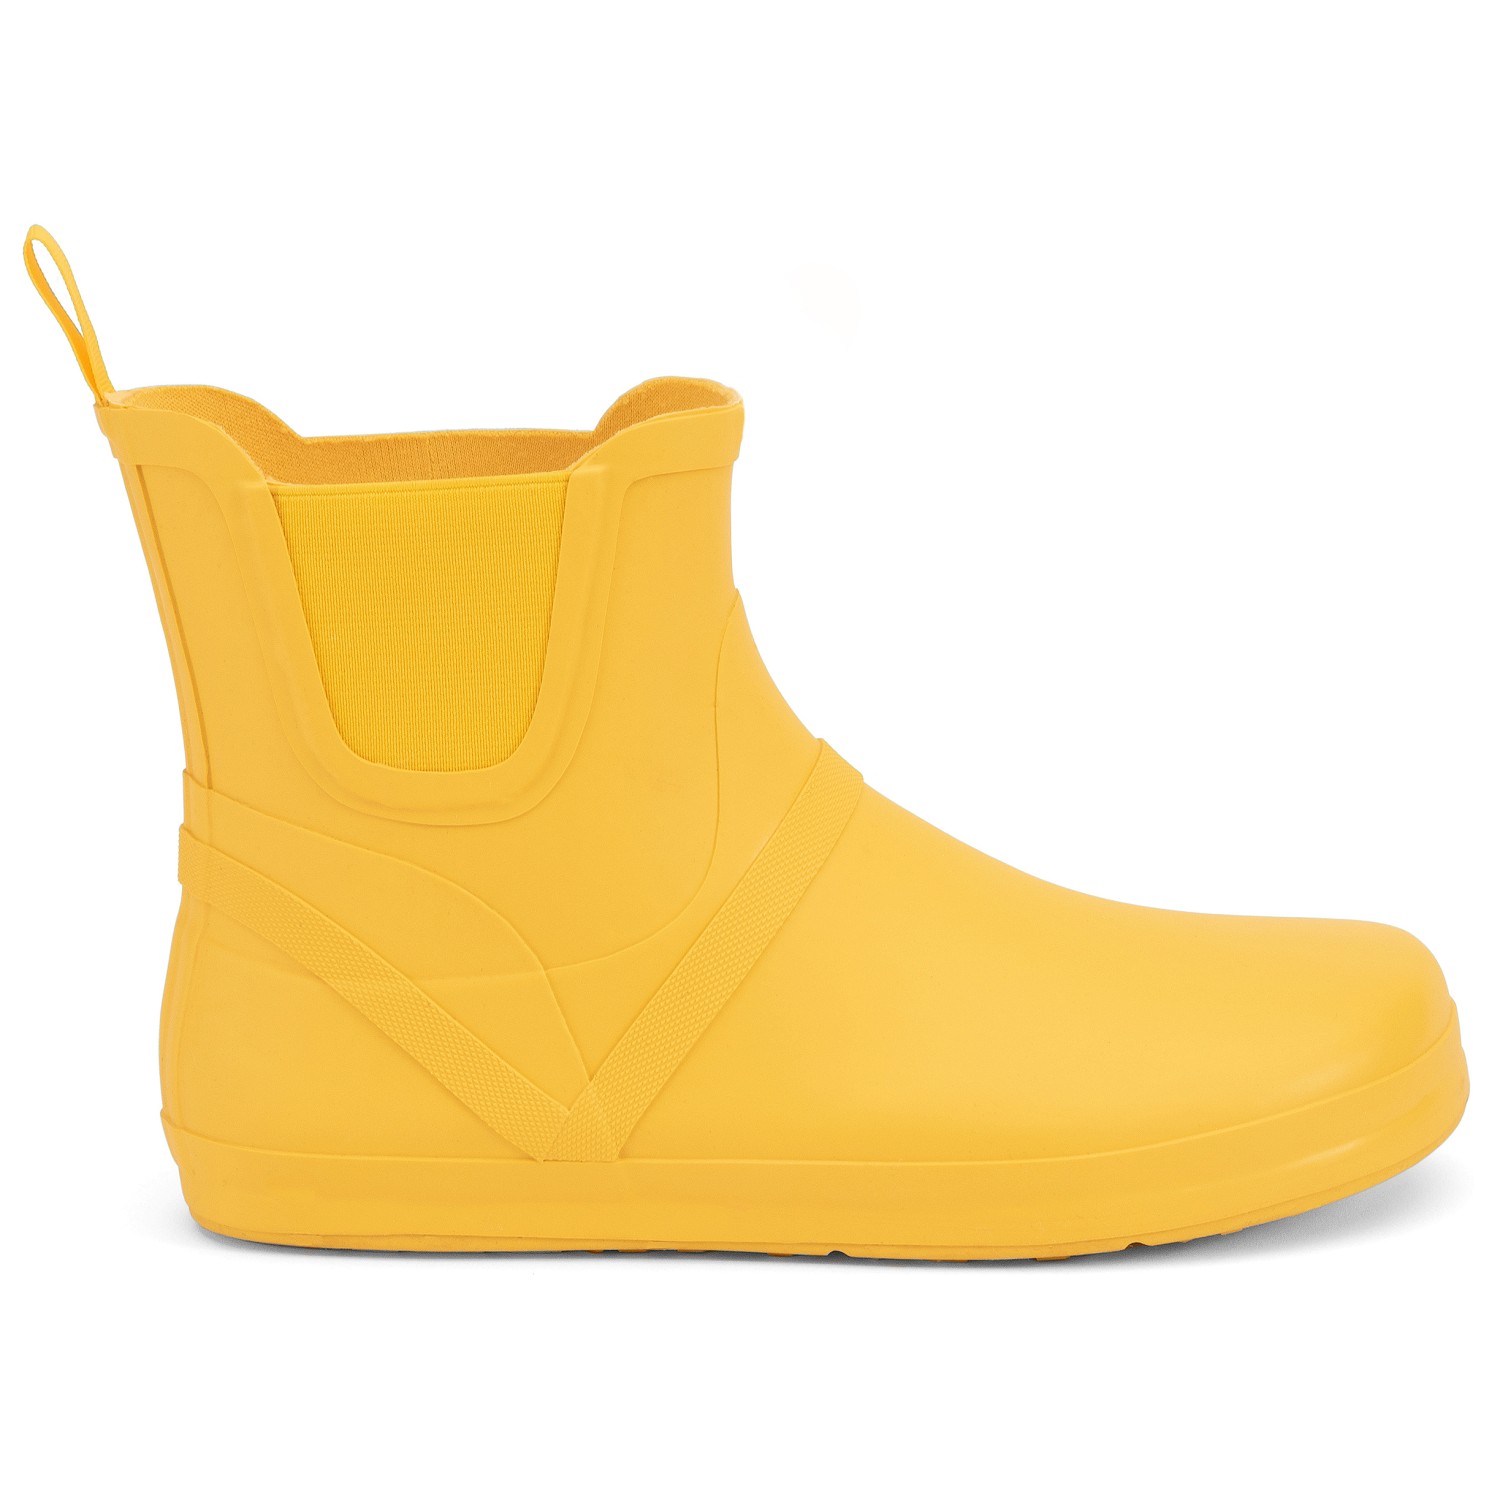 Босоножки Xero Shoes Women's Gracie, желтый